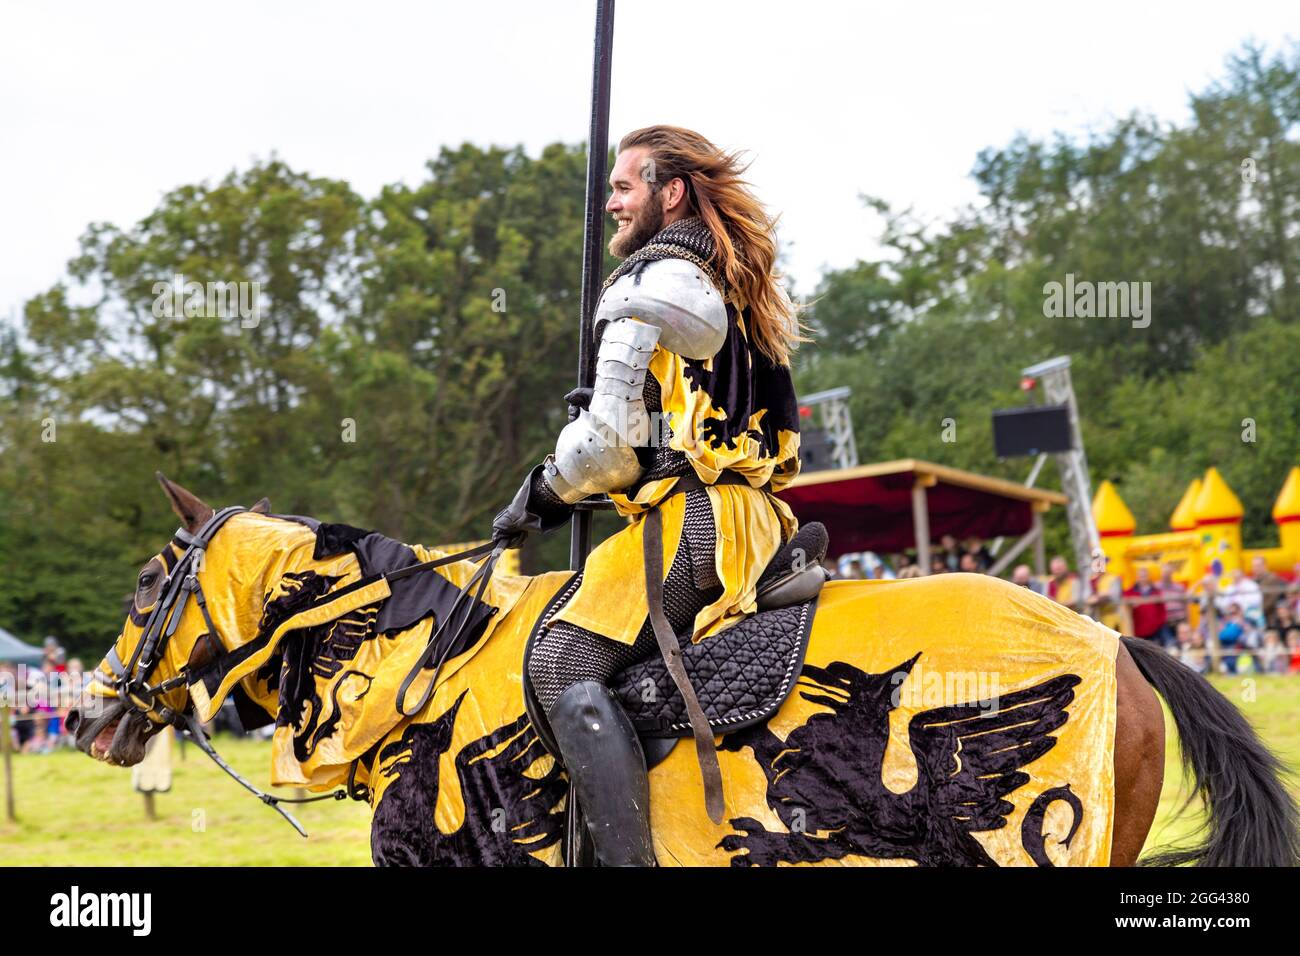 8. August 2021 - Ritter auf dem Pferderücken mit Lanze beim Turnier des Mittelalterfestes Loxwood Joust, West Sussex, England, Großbritannien Stockfoto